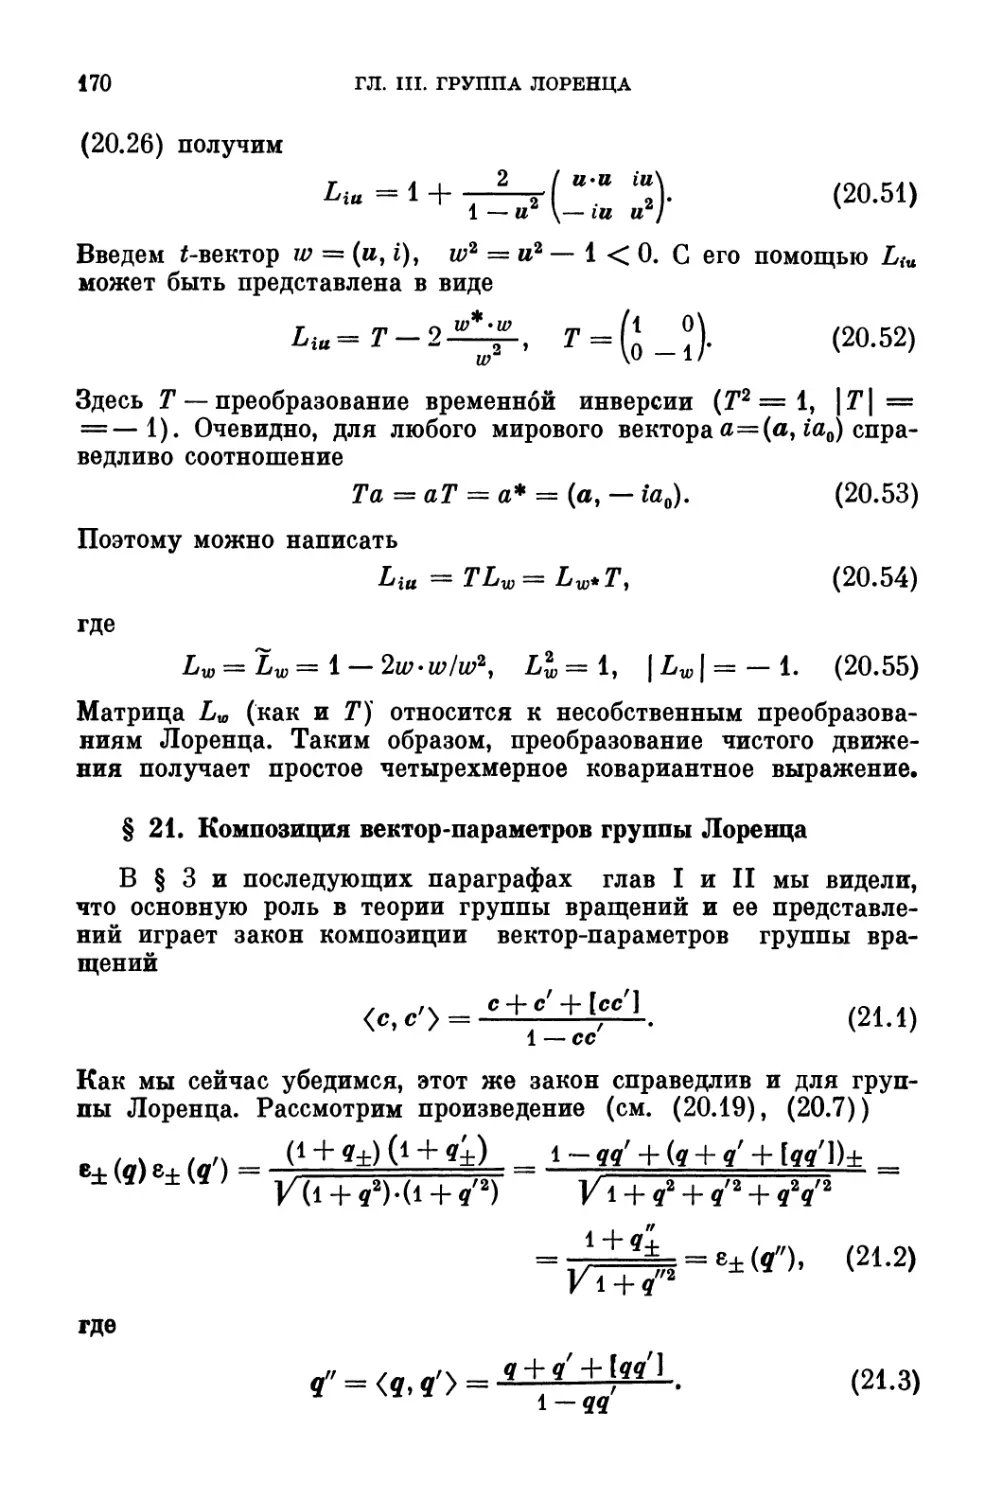 § 21. Композиция вектор-параметров группы Лоренца